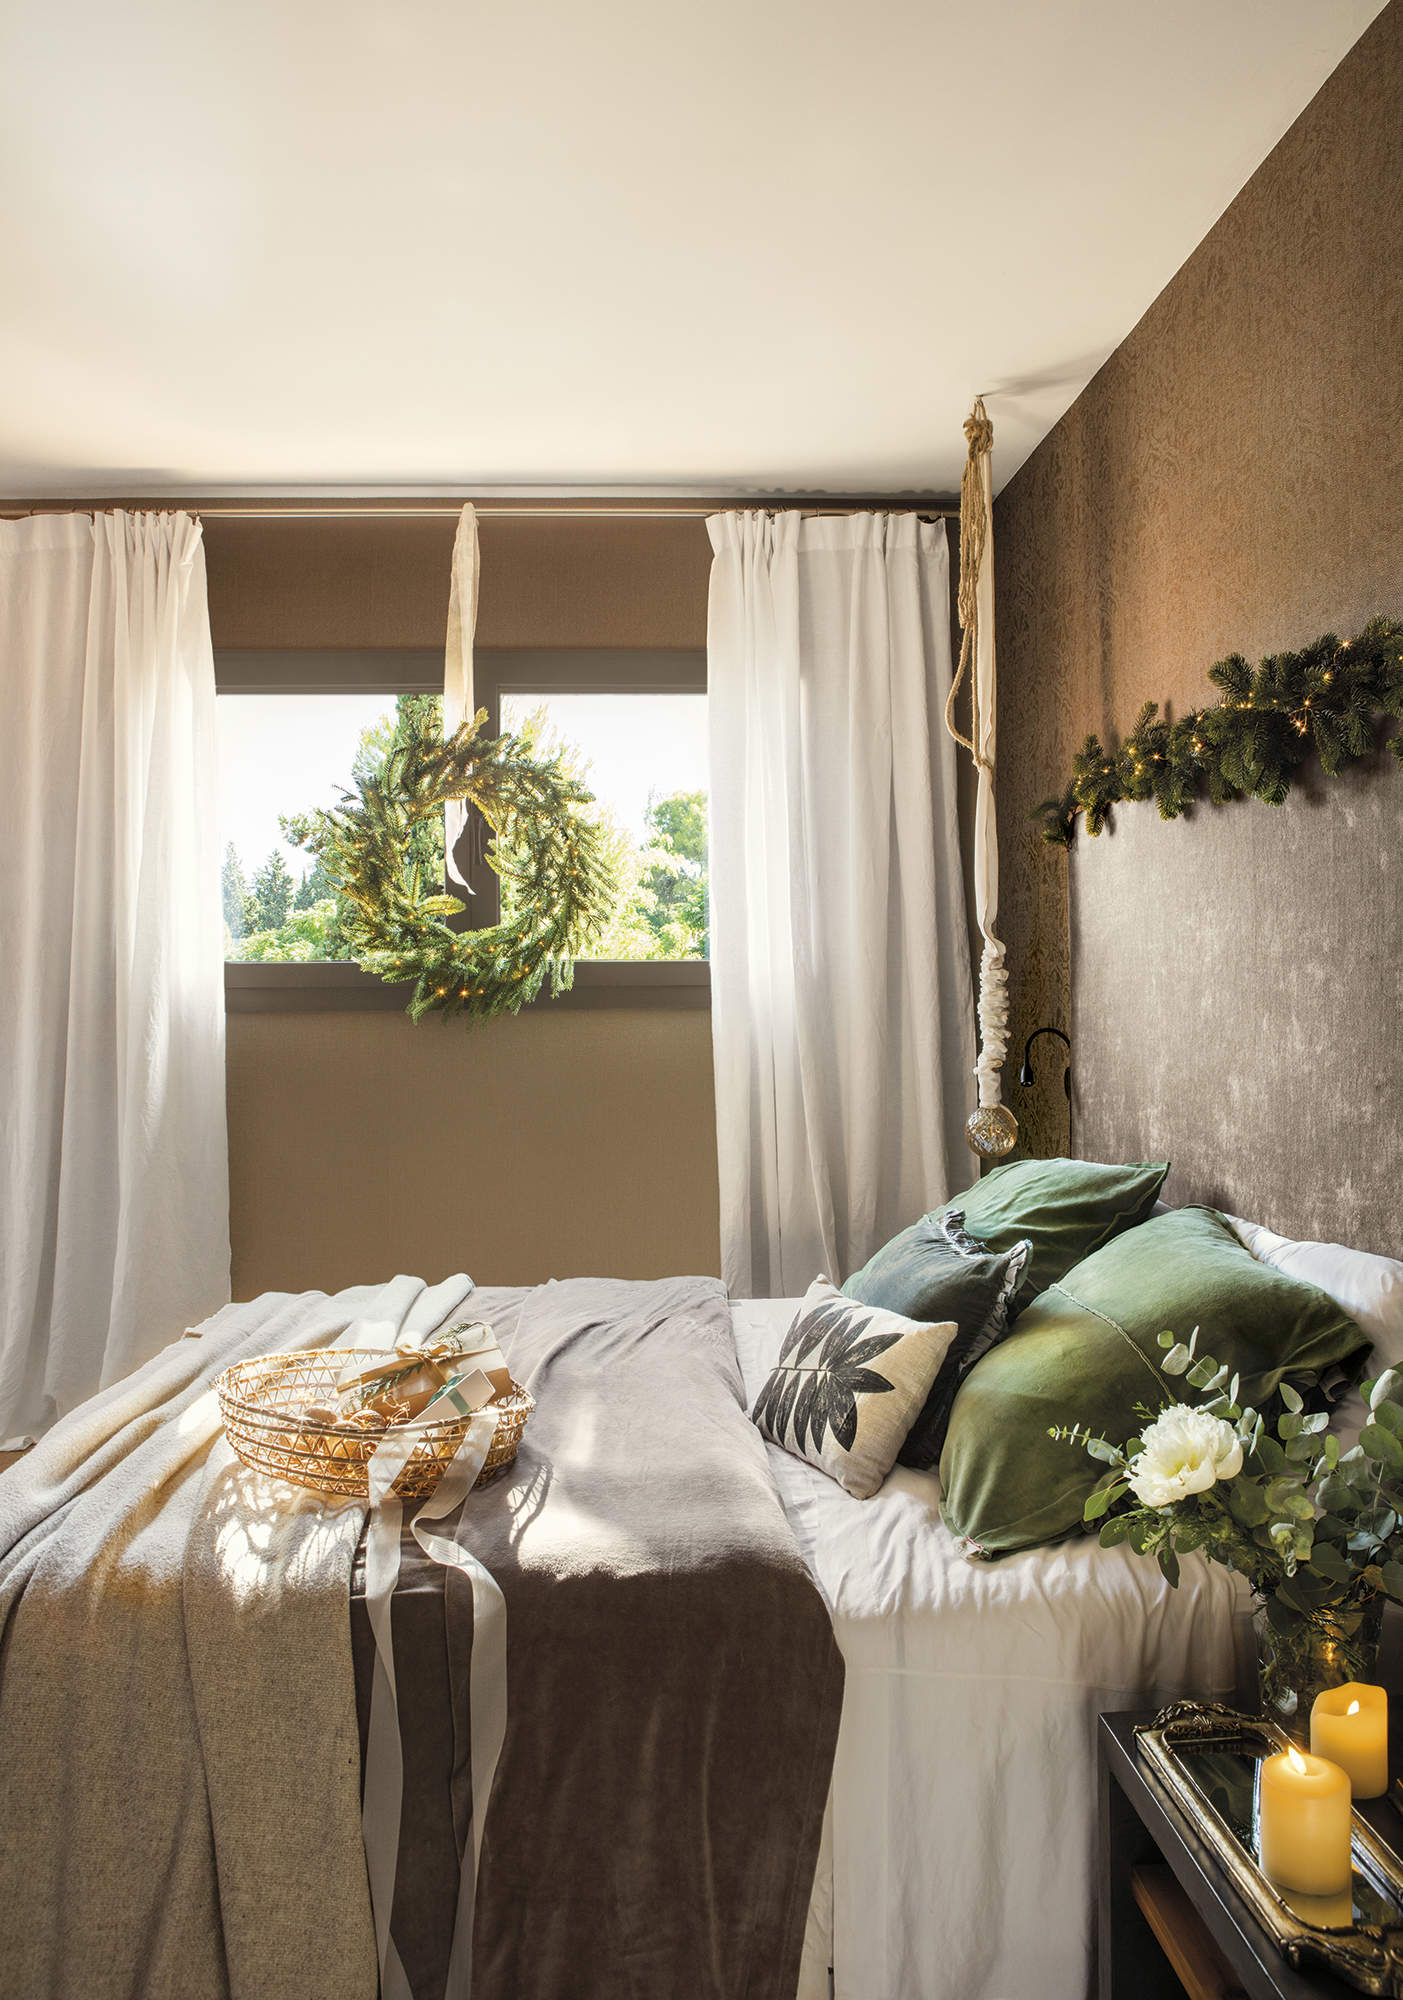 Dormitorio con ropa de cama cortinas y decoracion de navidad